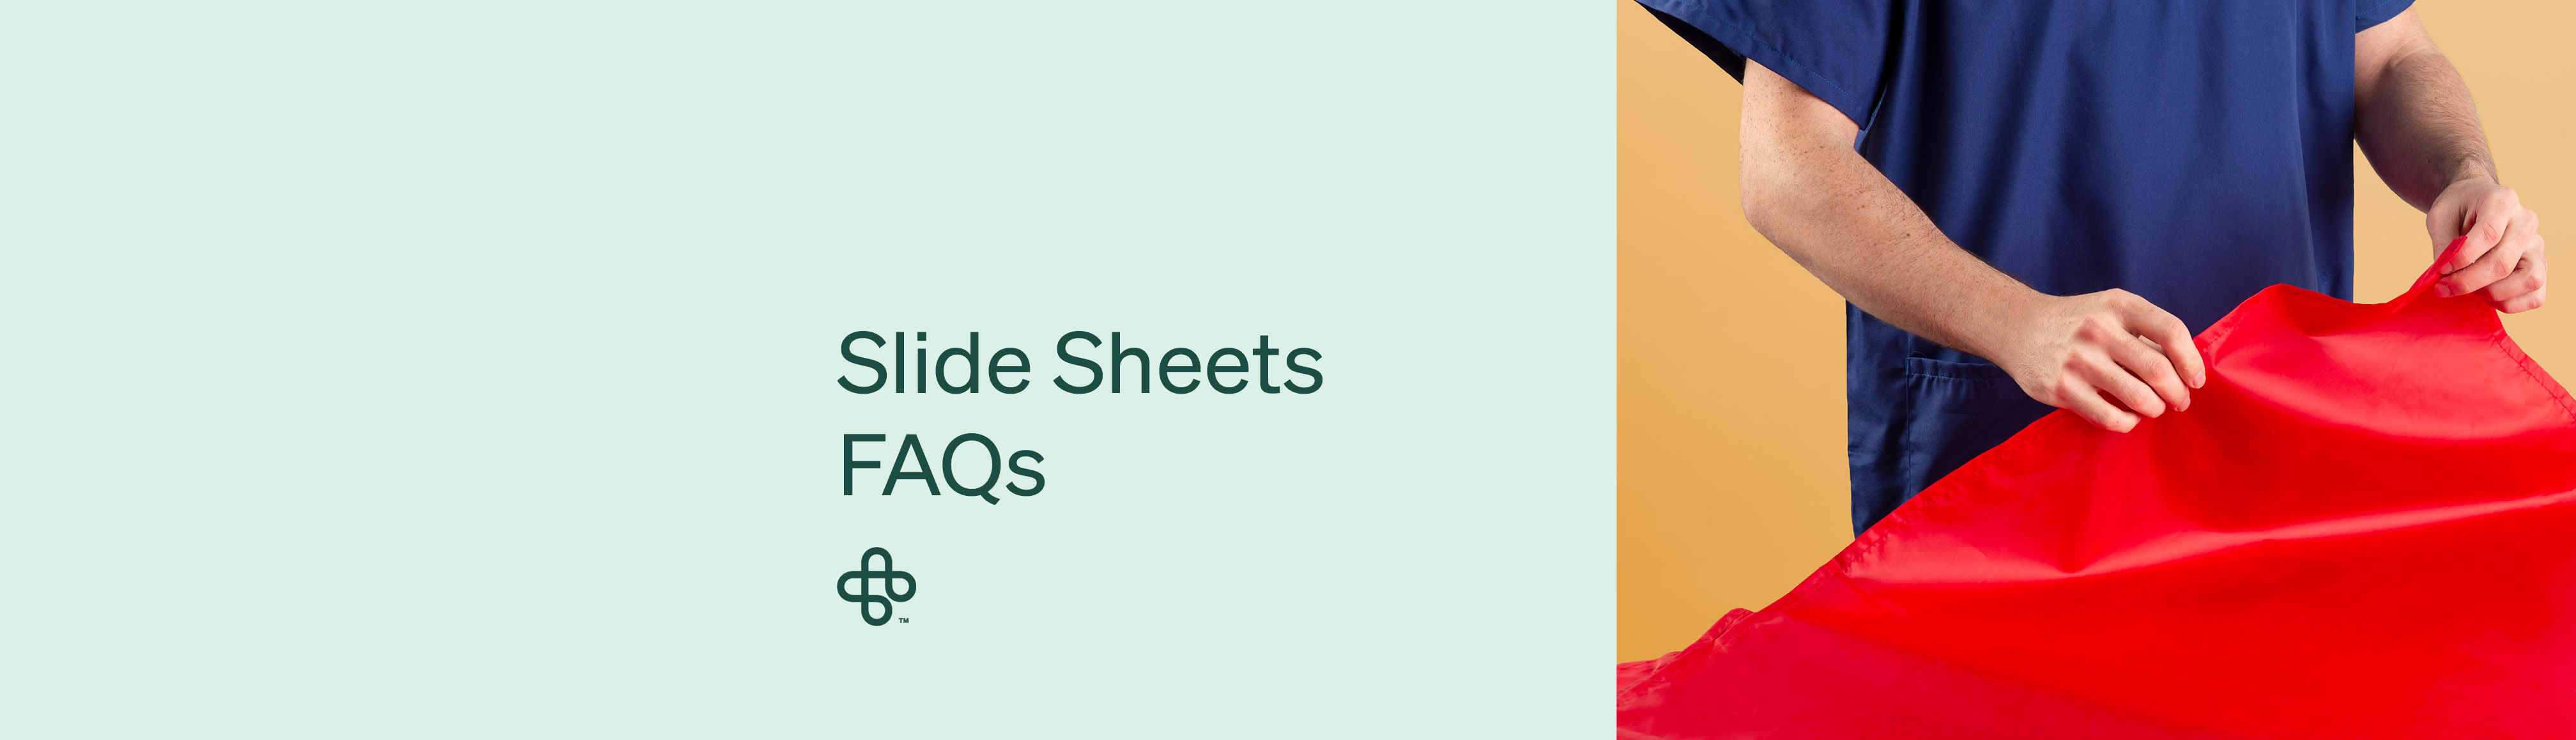 Slide Sheet FAQs Blog